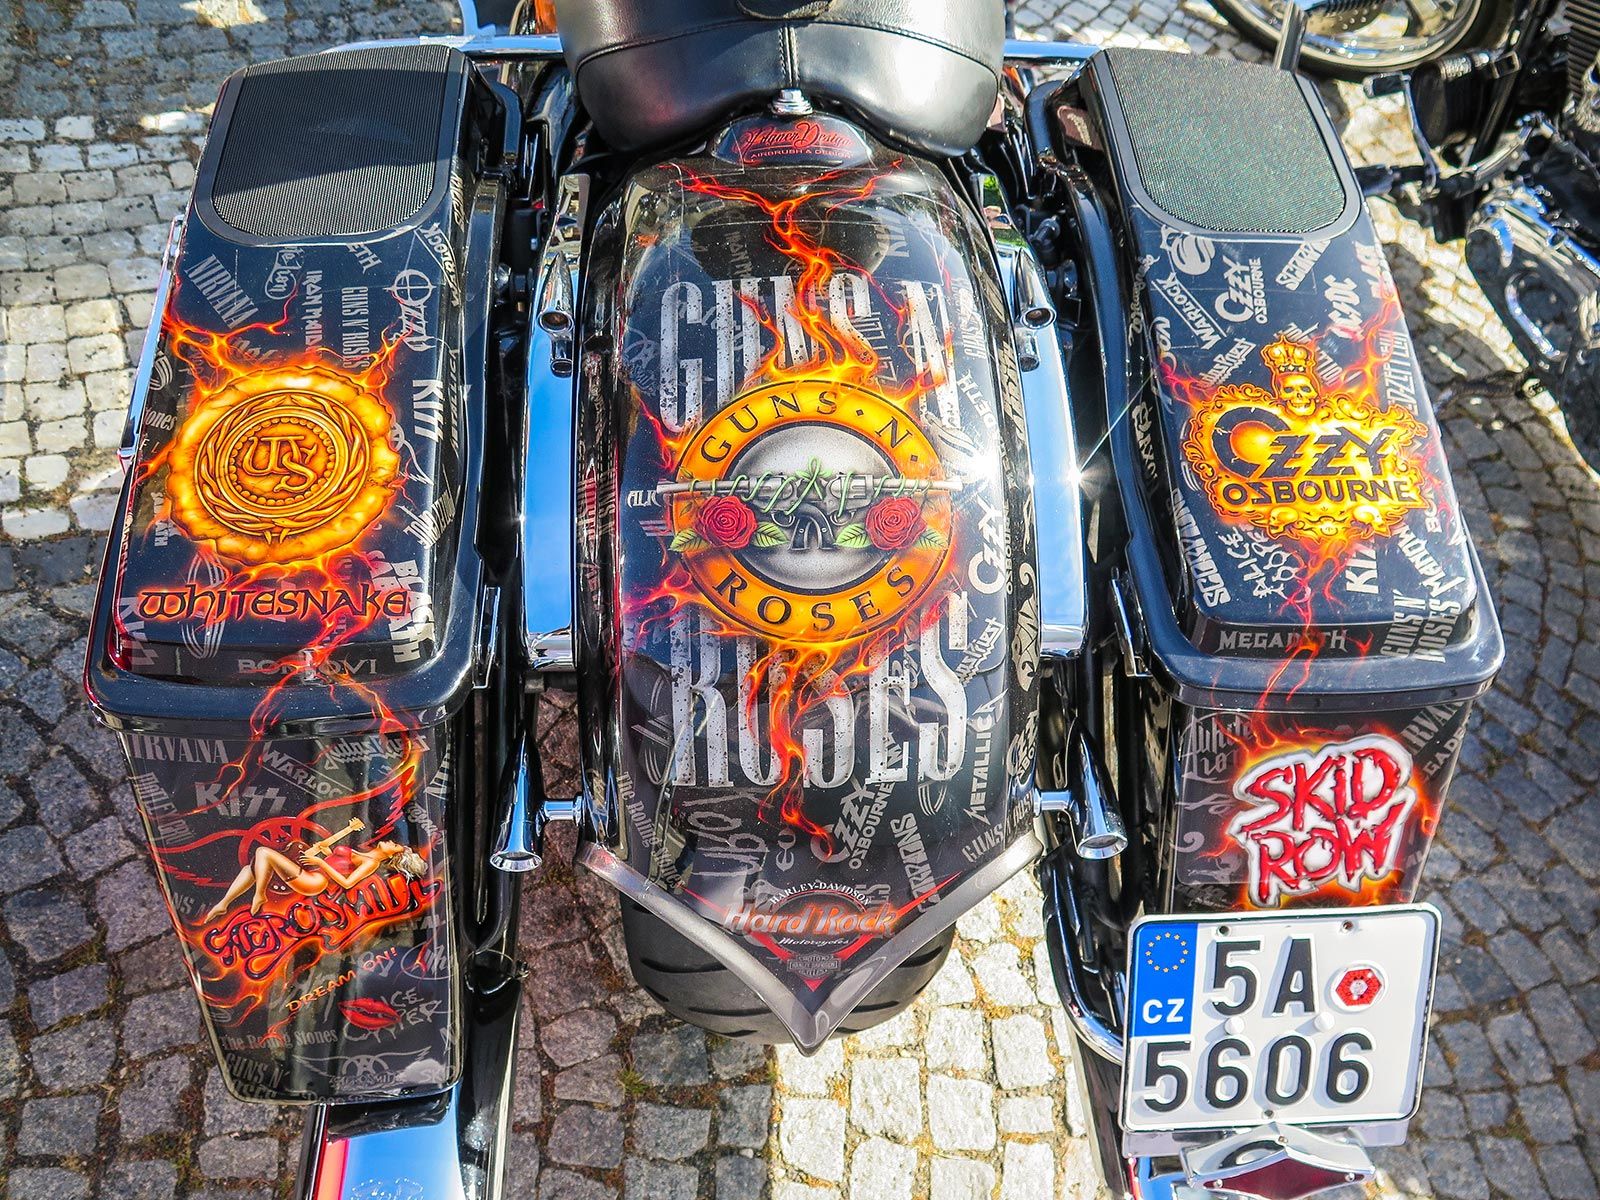 Prague Harley Days